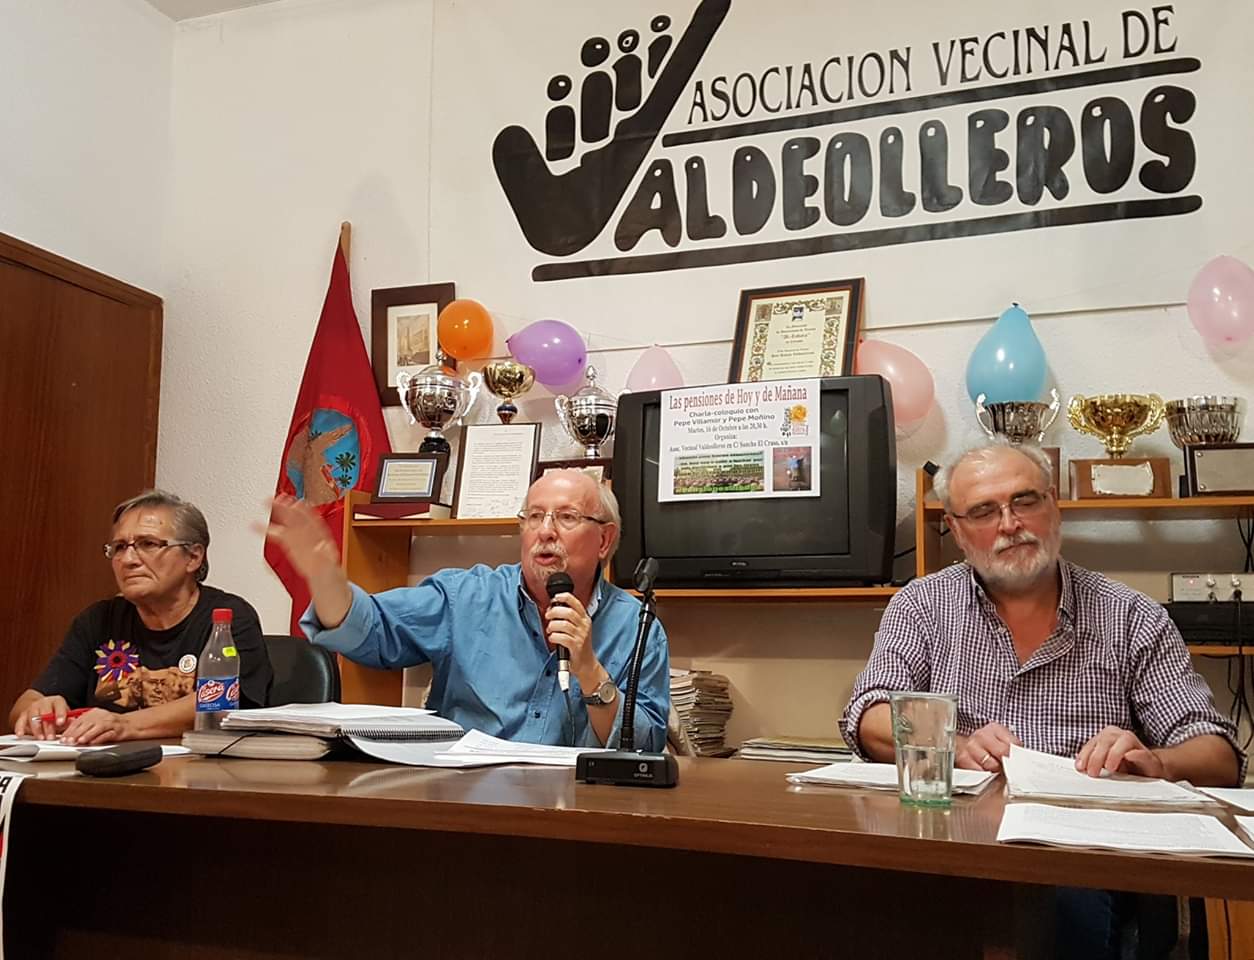 Pepe Villamor: “Nuestra fuerza está en la movilización social y en nuestro voto”. Charla-debate “Las pensiones de hoy y de mañana”